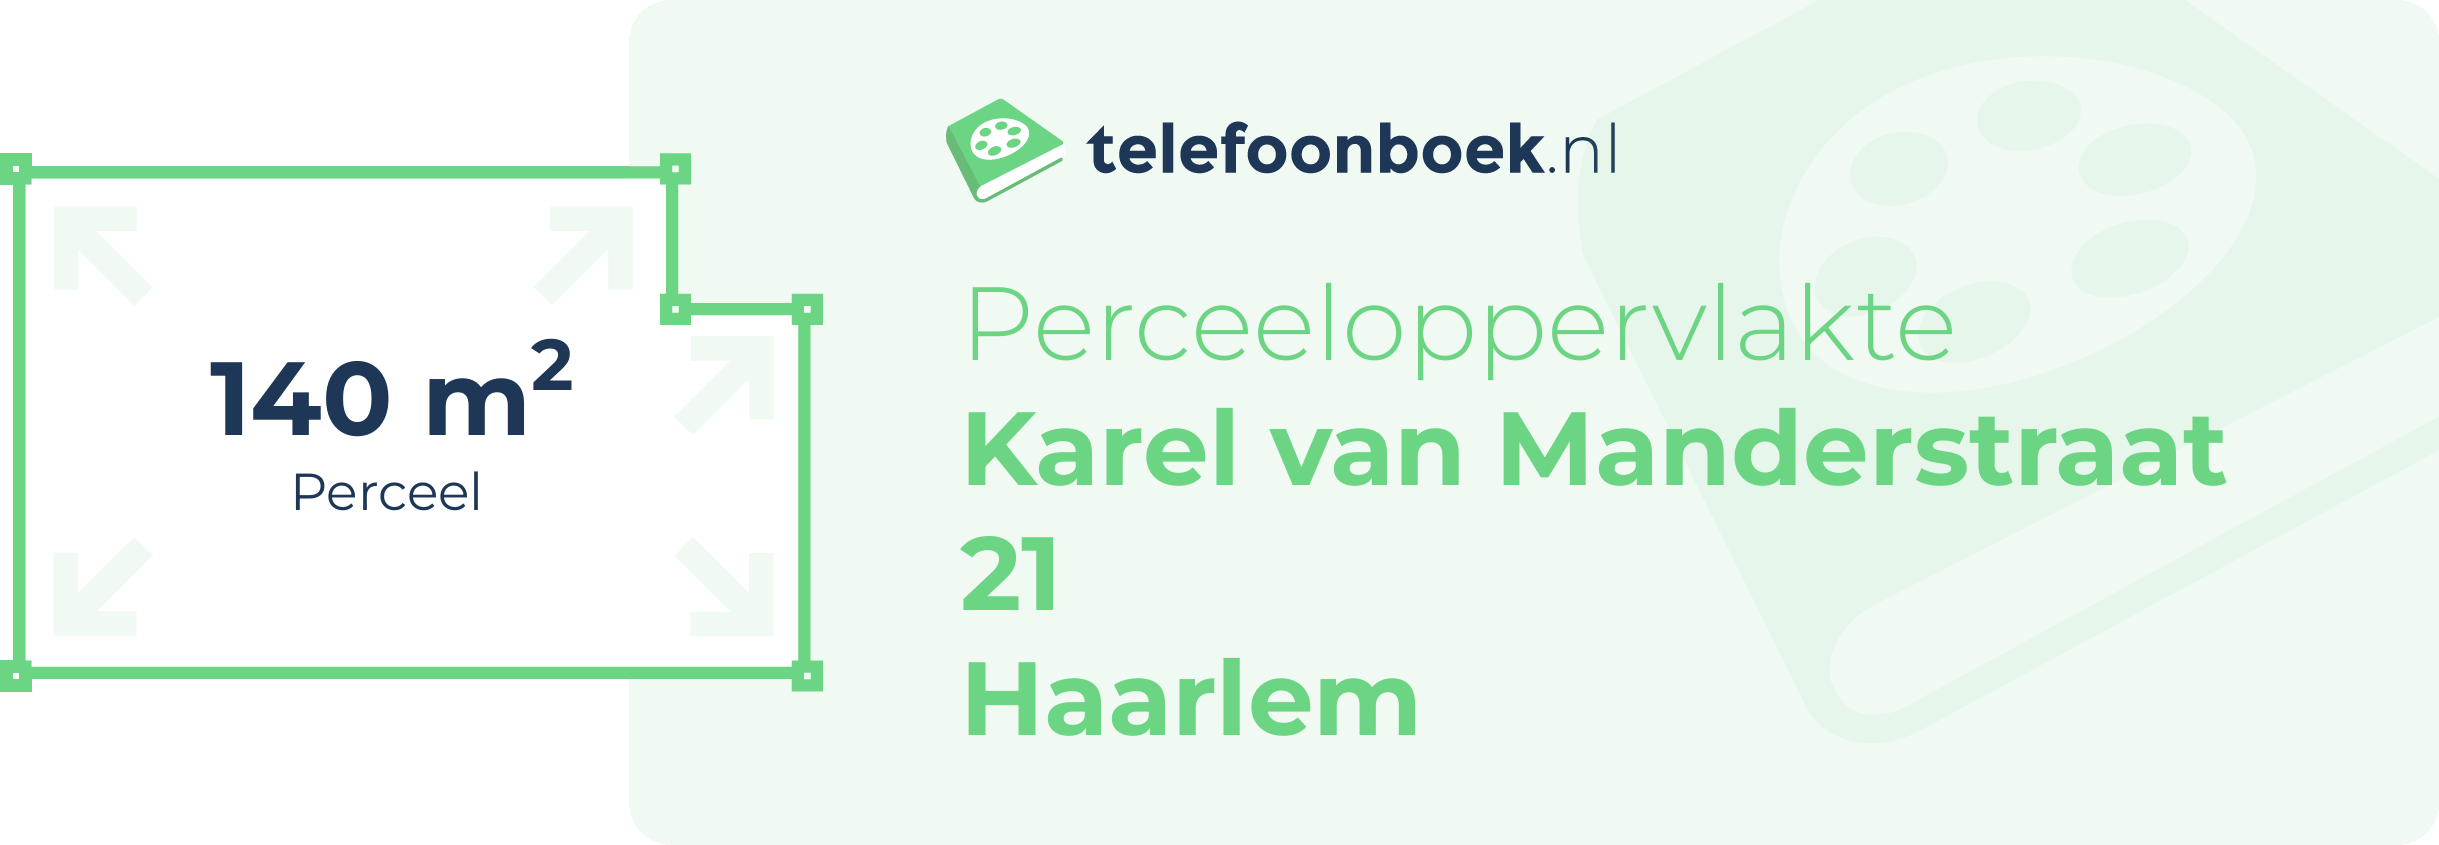 Perceeloppervlakte Karel Van Manderstraat 21 Haarlem